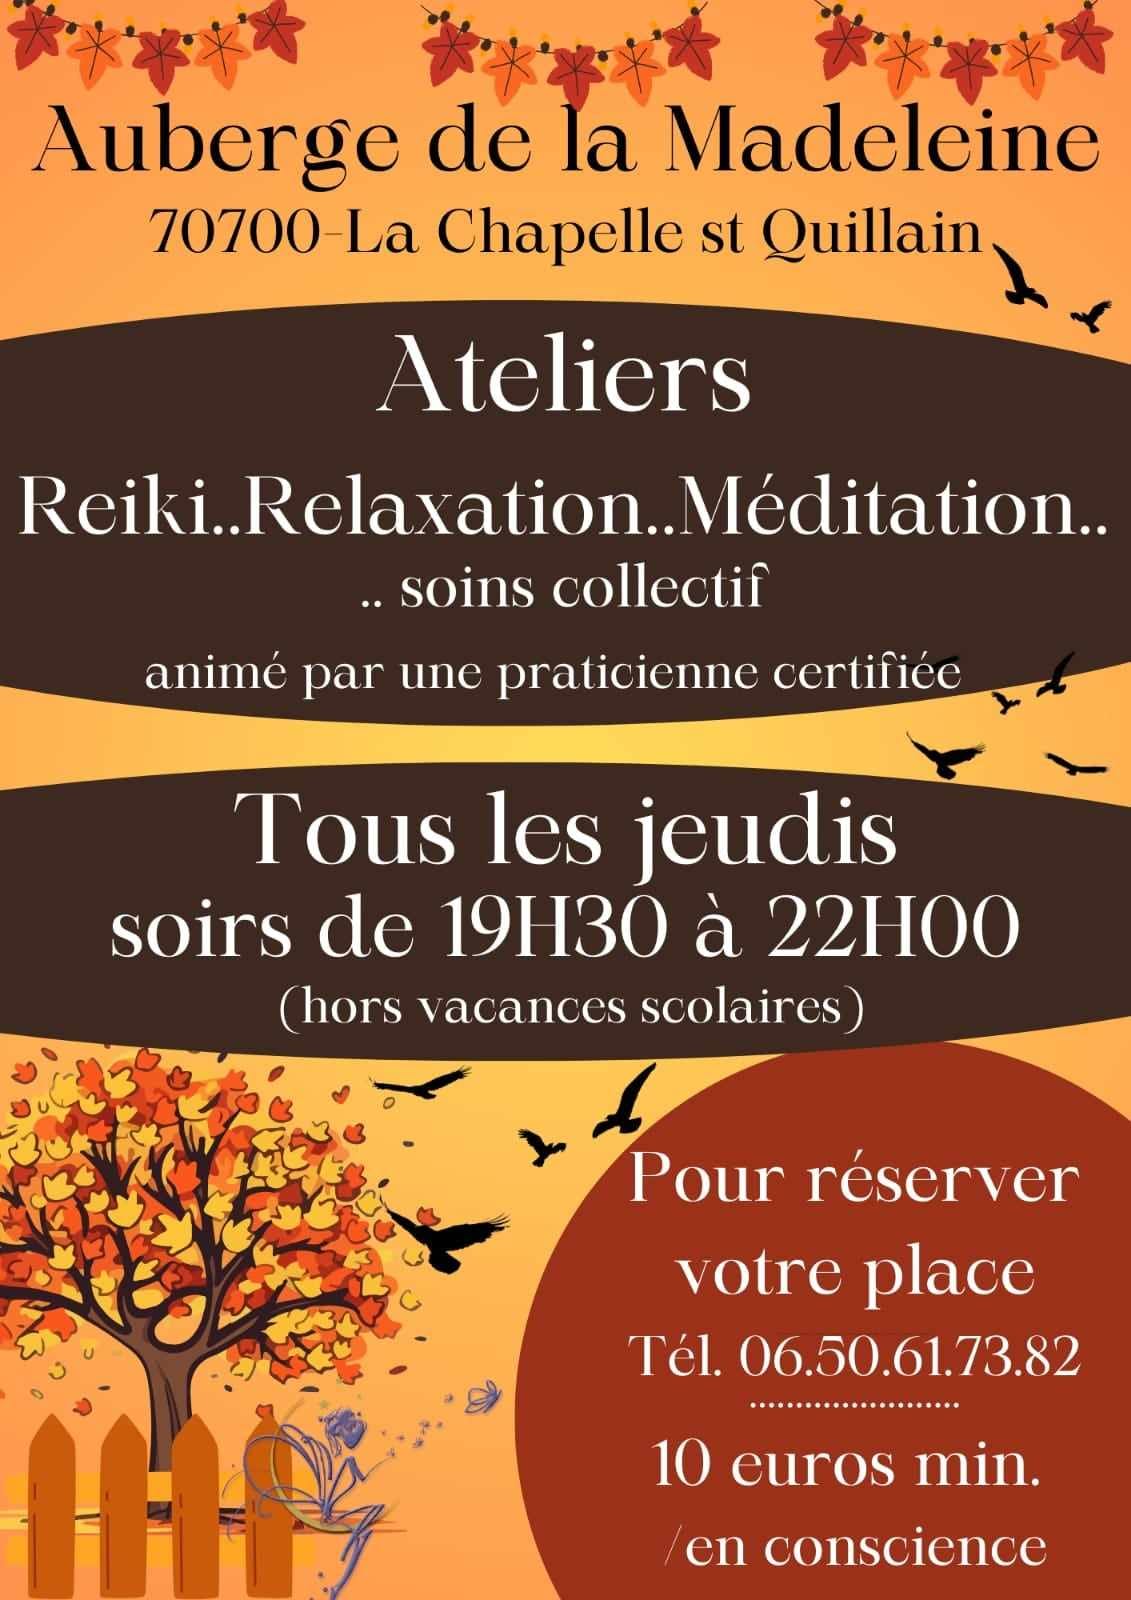 Ateliers reiki, relaxation, méditation et soins collectifs à l'auberge de la Madeleine 